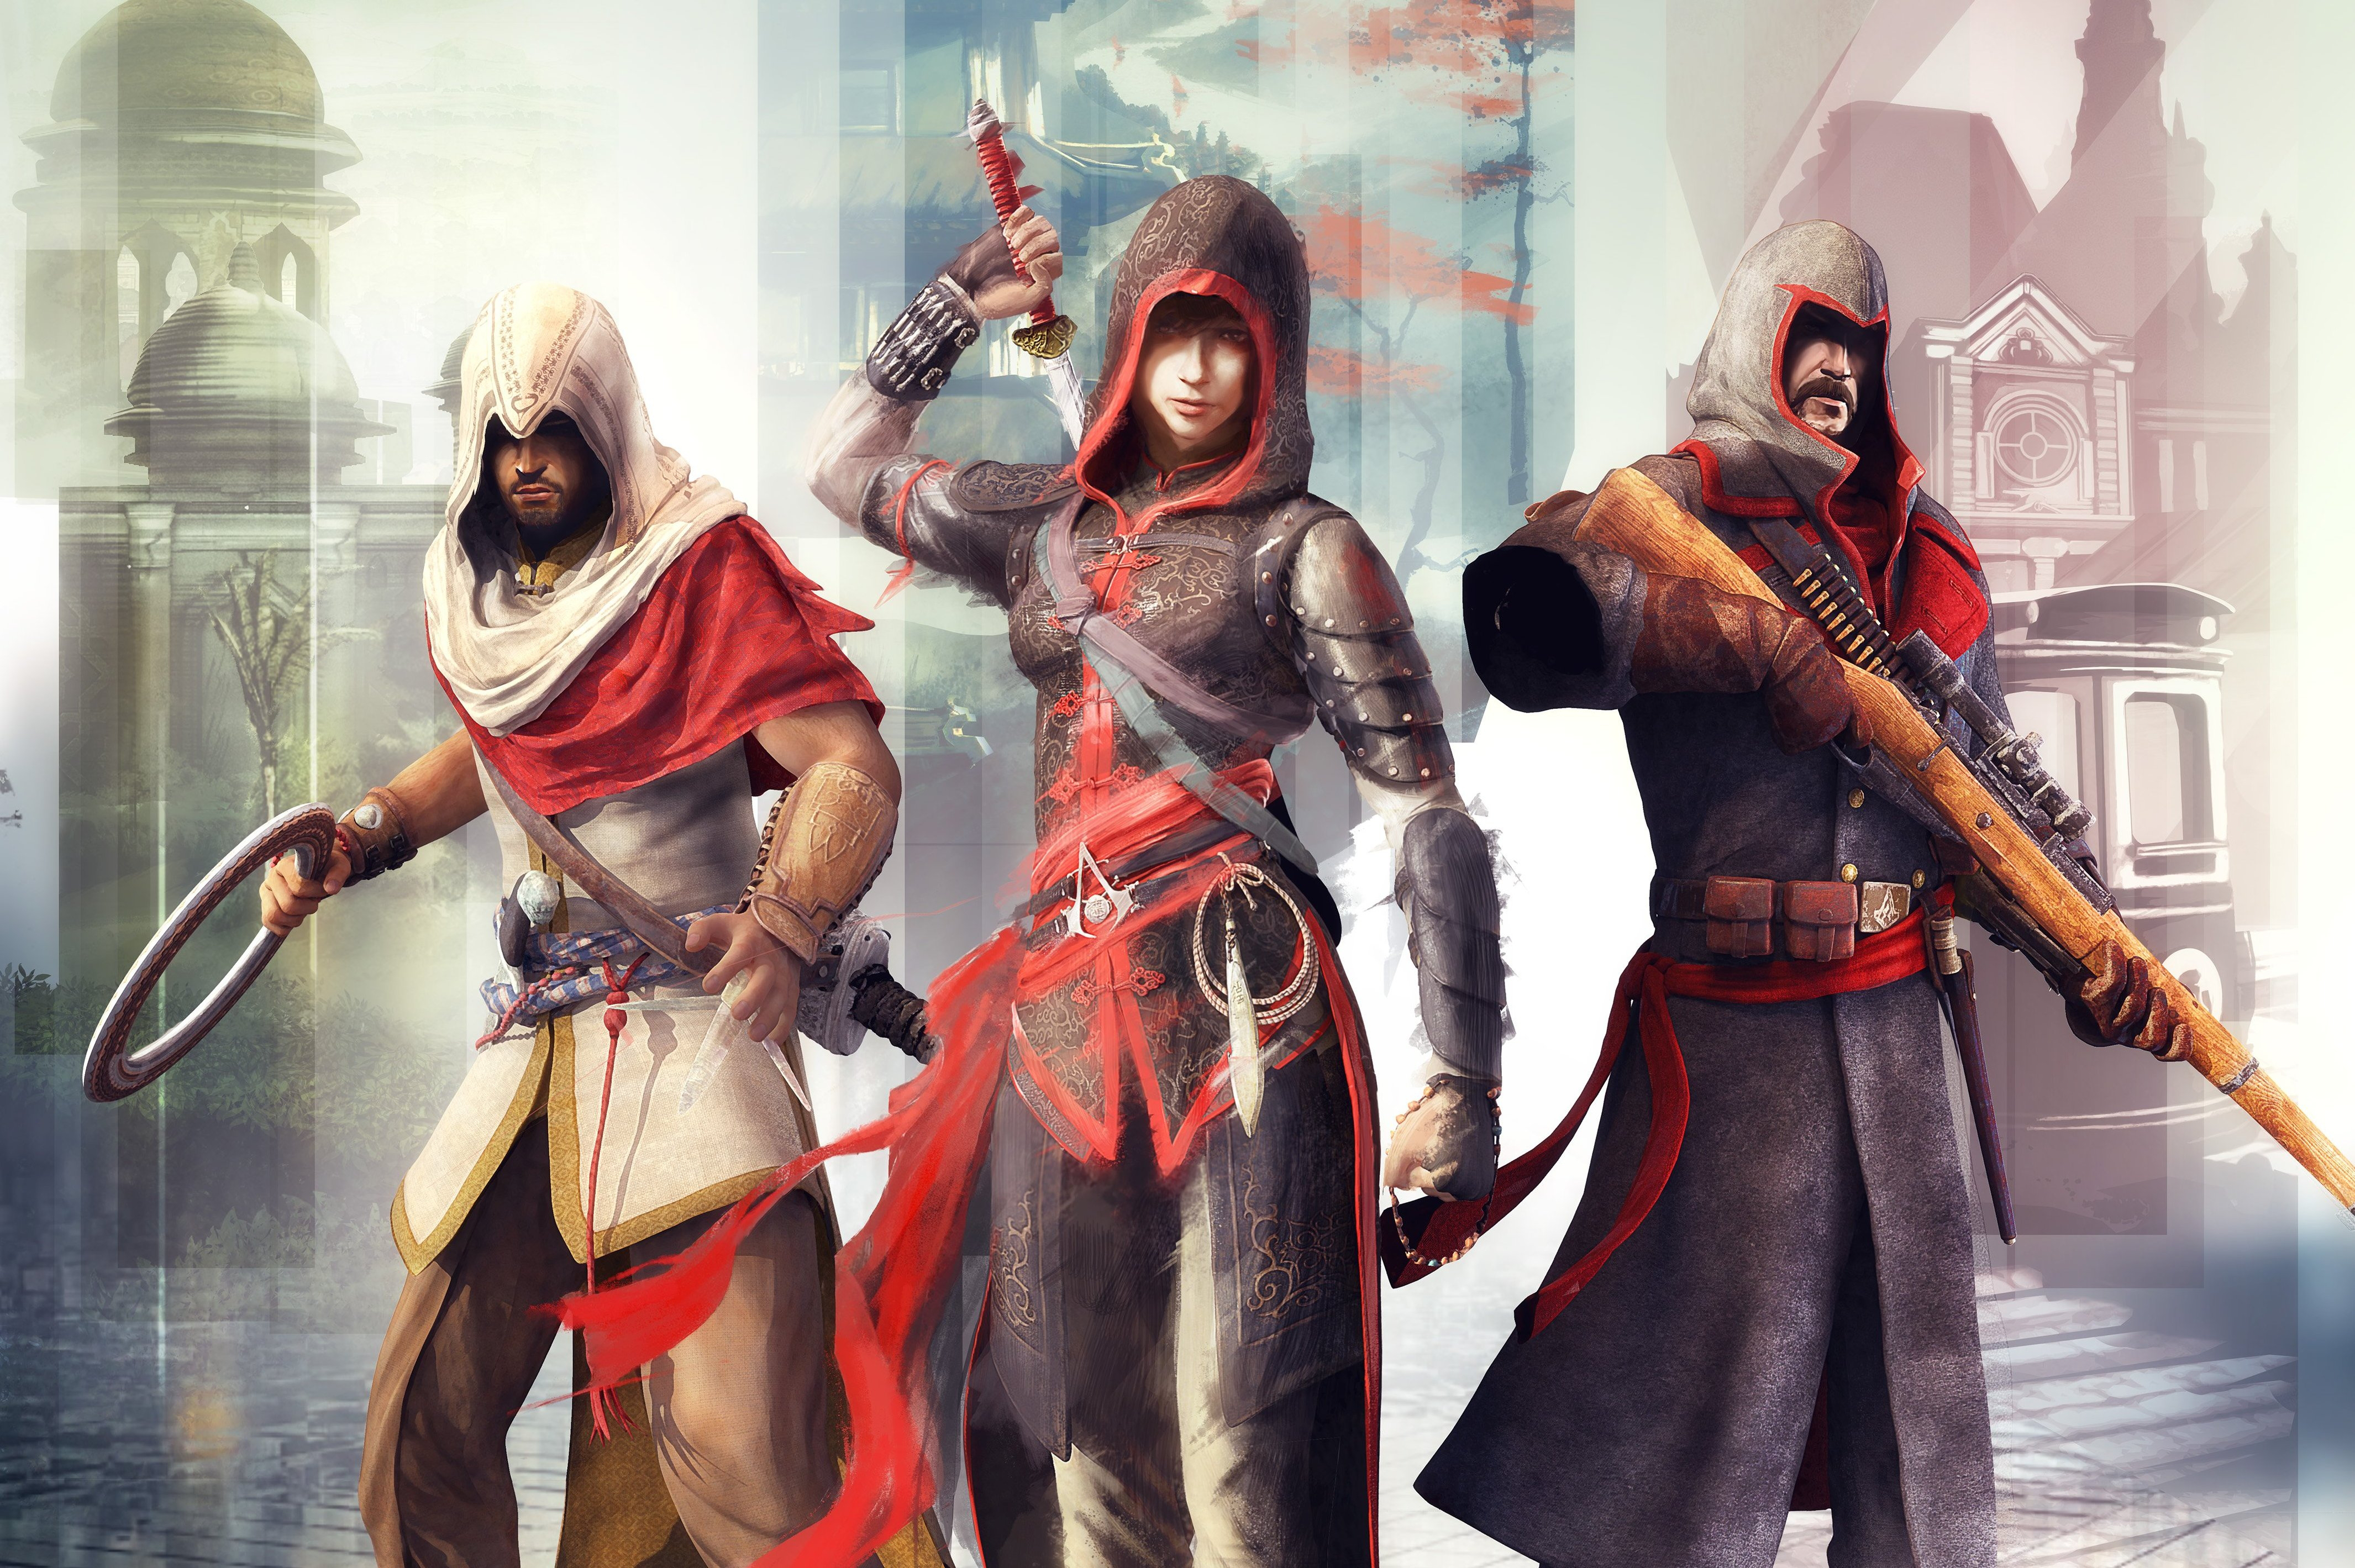 Популярные заставки и фоны Хроники Assassin's Creed на компьютер